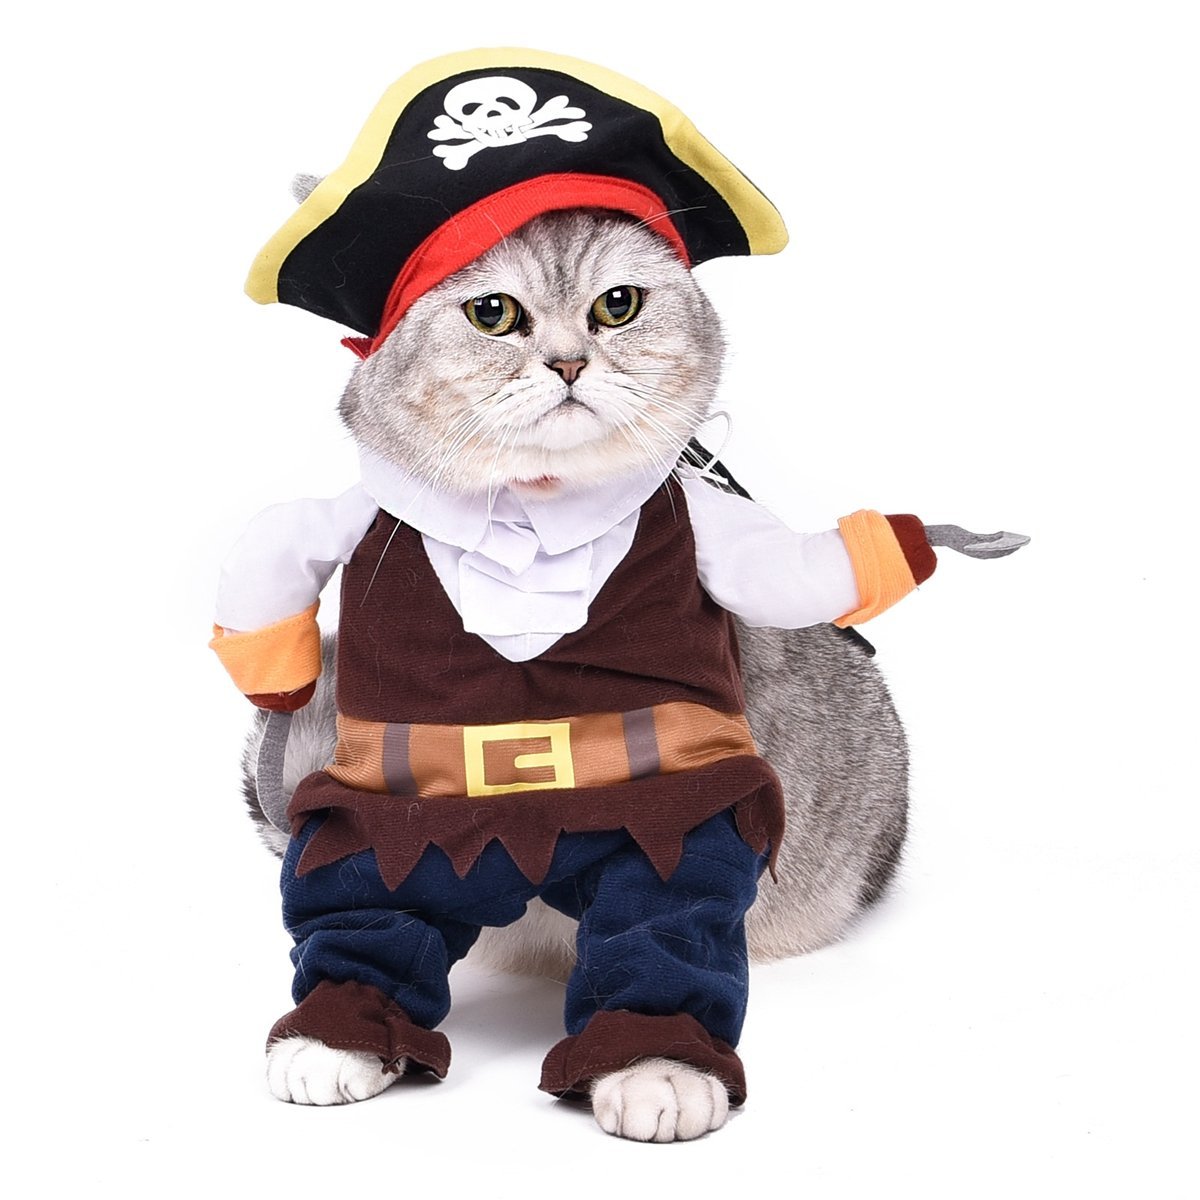 Gato disfrazado de Pirata. Amazon